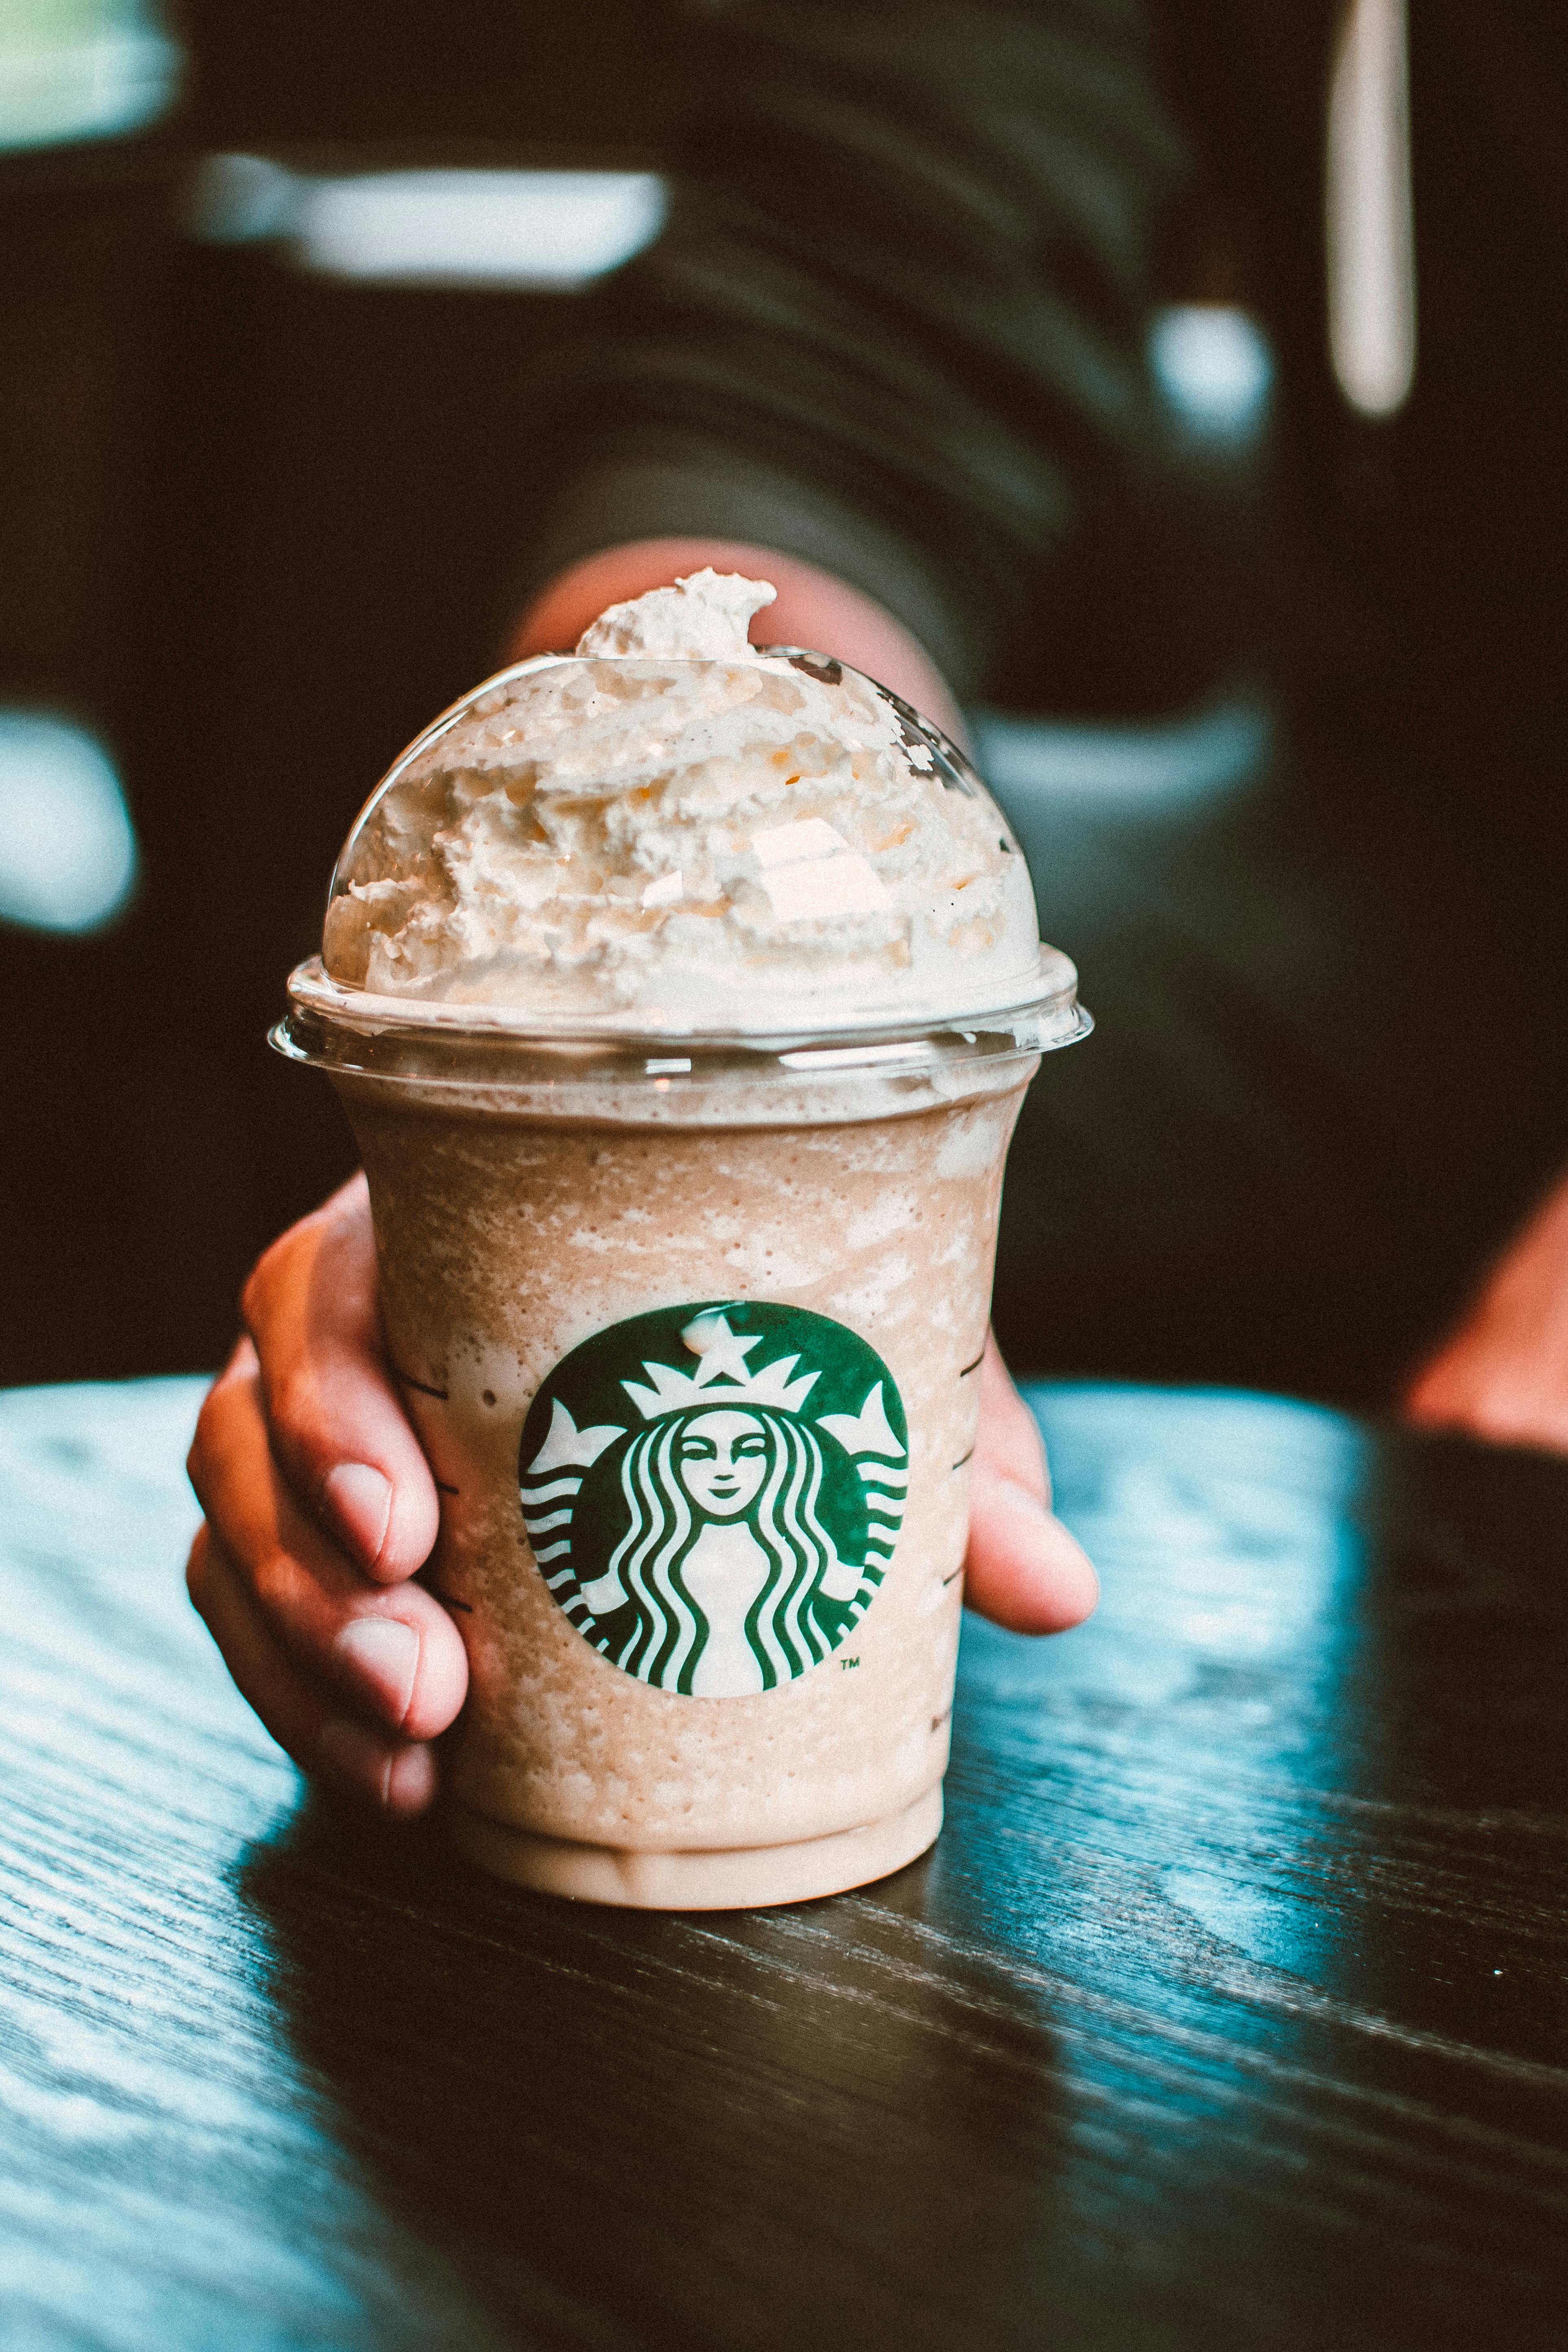 Xây dựng tính nhất quán trong hình ảnh thương hiệu: Bài học từ 7 chiến lược  marketing nổi bật của Starbucks | Advertising Vietnam